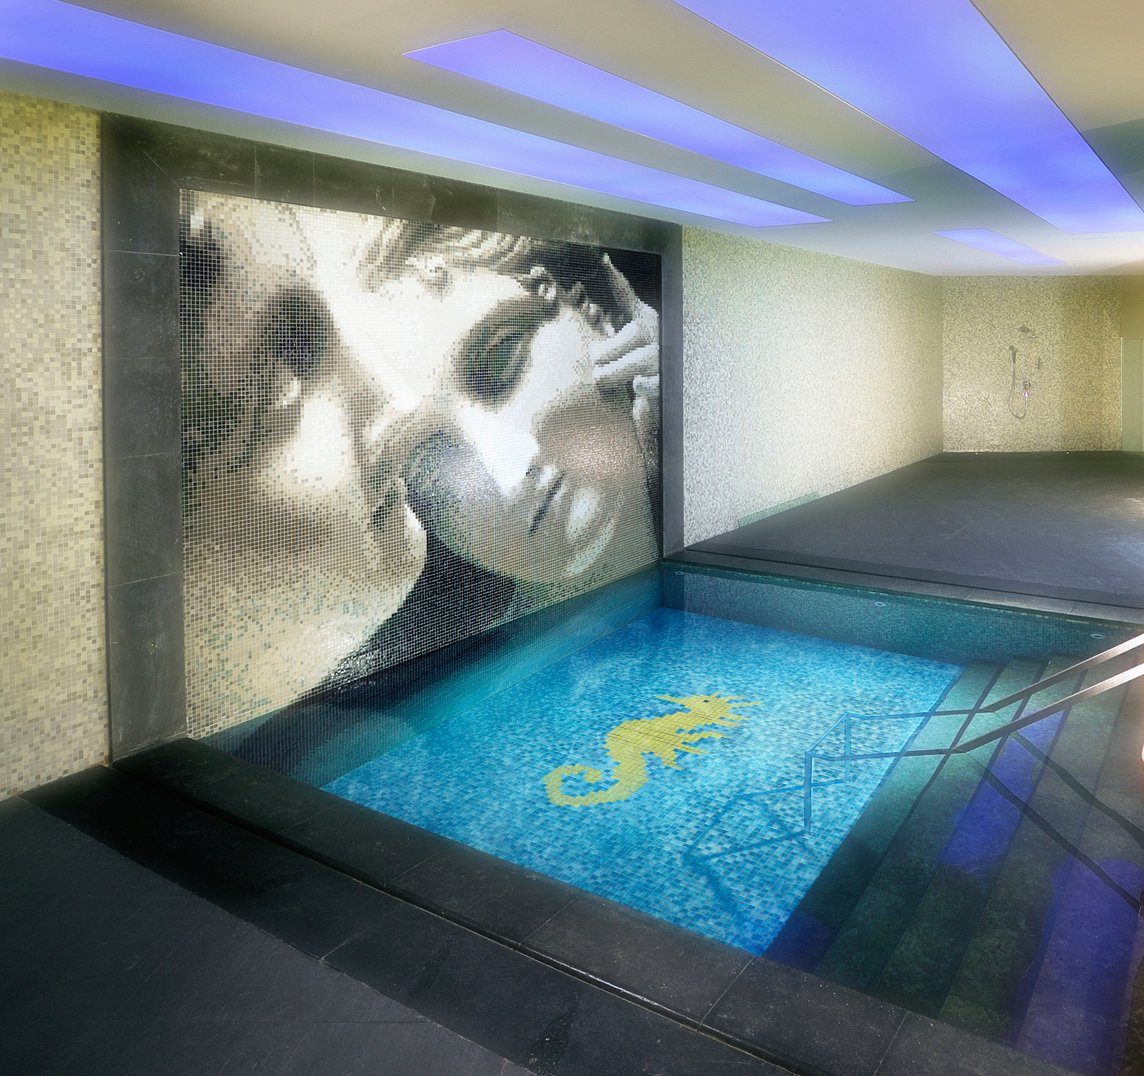 Mosaikfliesen Poolboden Papierverklebt Set, Bild Mosani Glasmosaik, Seepferdchen